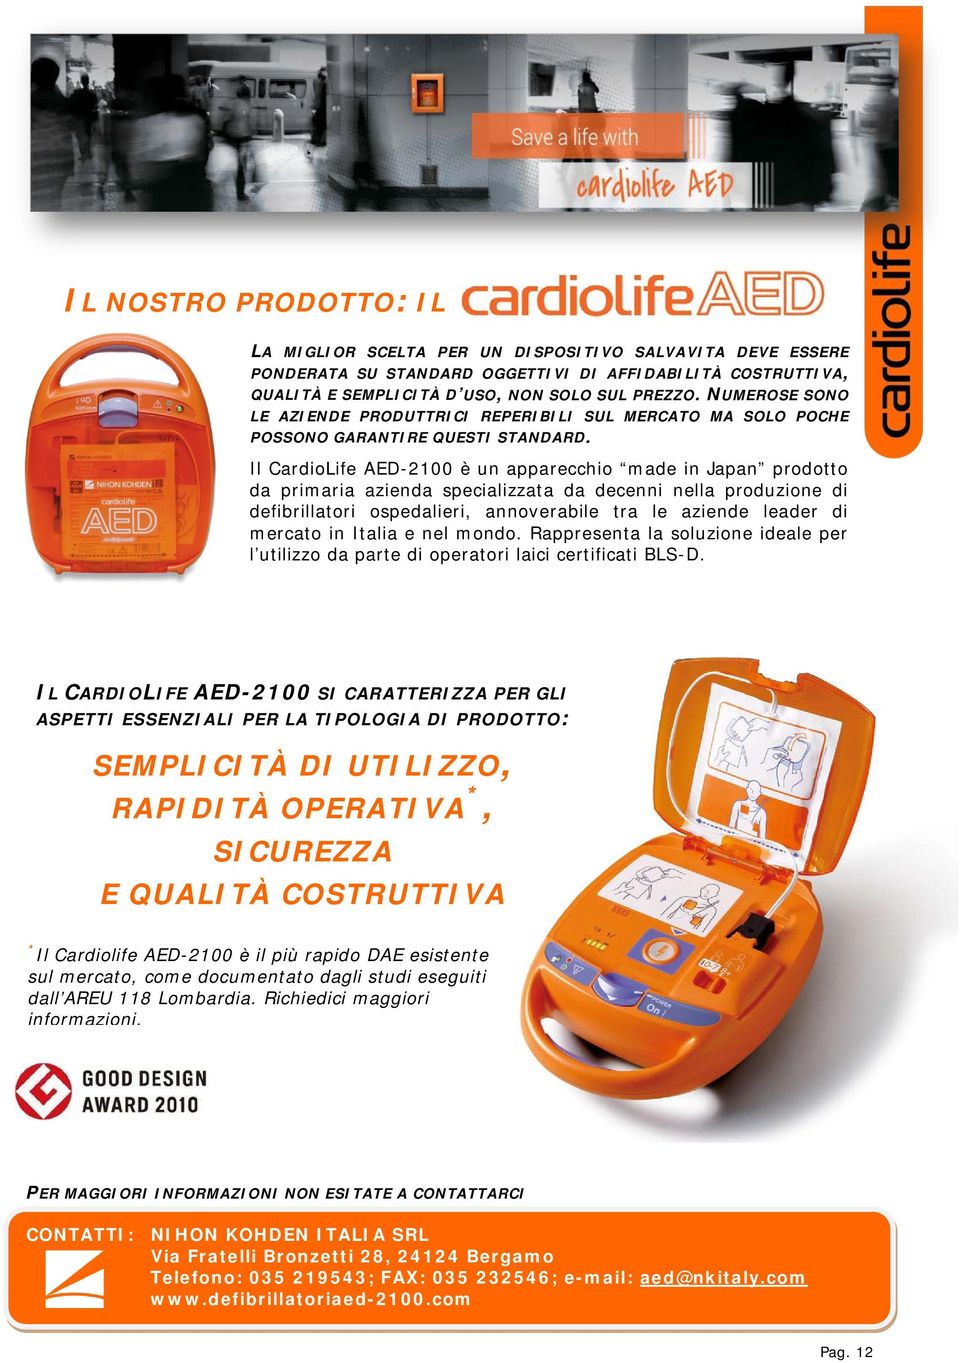 Il CardioLife AED-2100 è un apparecchio made in Japan prodotto da primaria azienda specializzata da decenni nella produzione di defibrillatori ospedalieri, annoverabile tra le aziende leader di